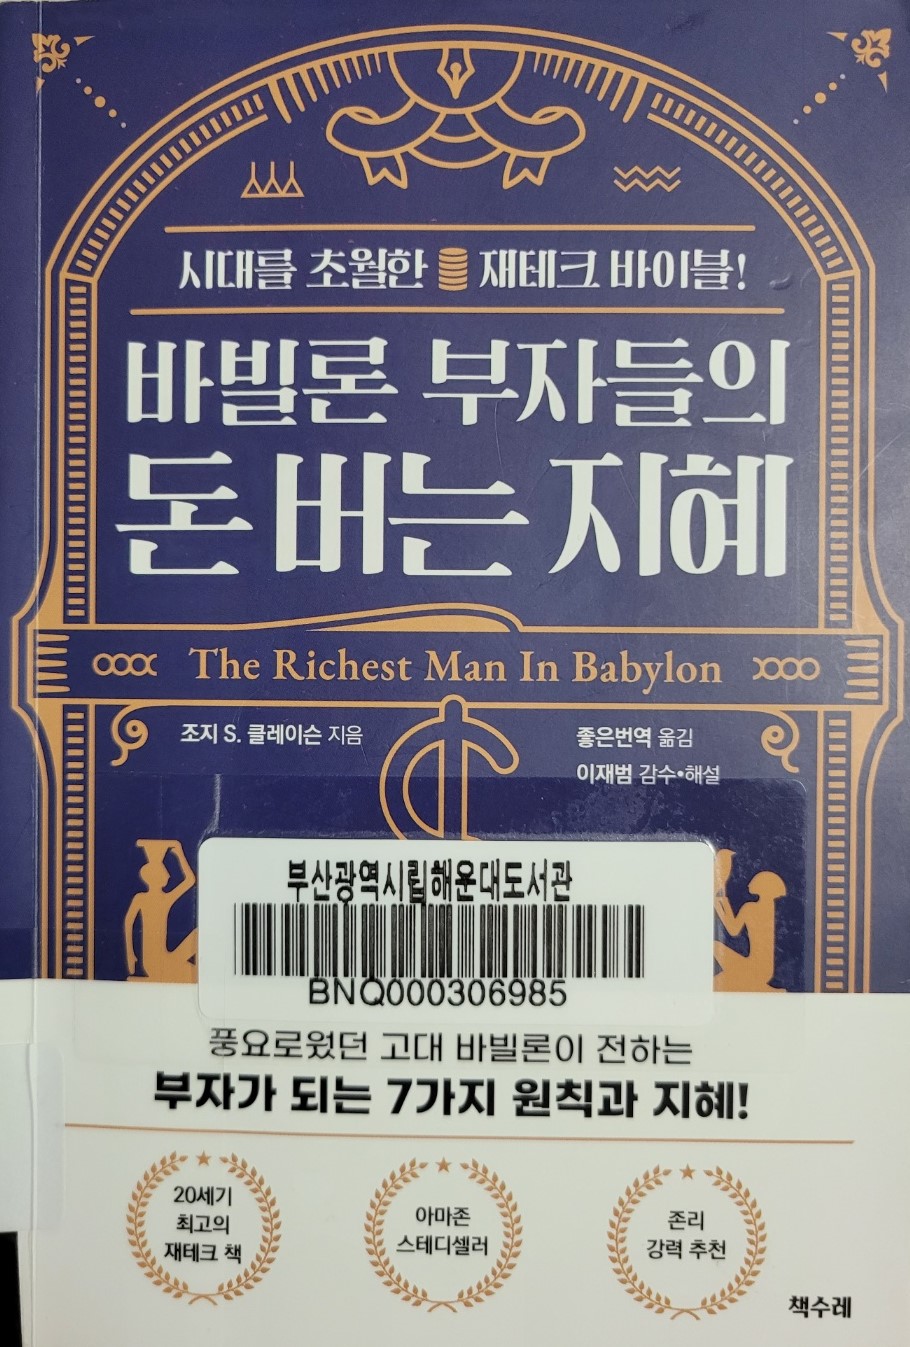 부자되는법 알려주는 책 - 바빌론 부자들의 돈버는 지혜